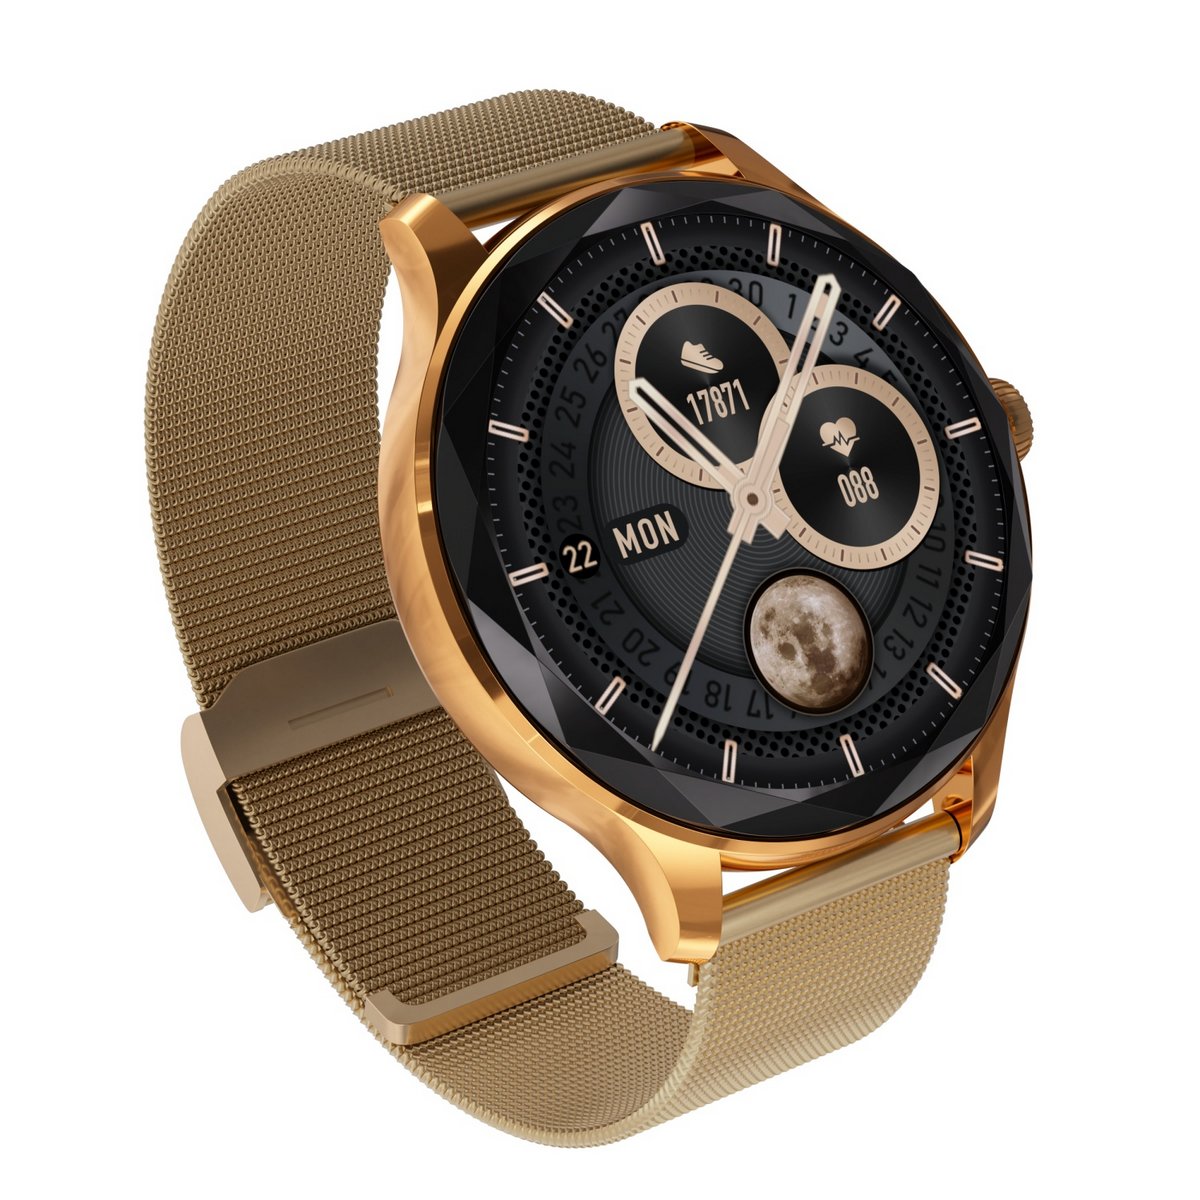 Zegarek damski Smartwatch Garett Viva złoty stalowy